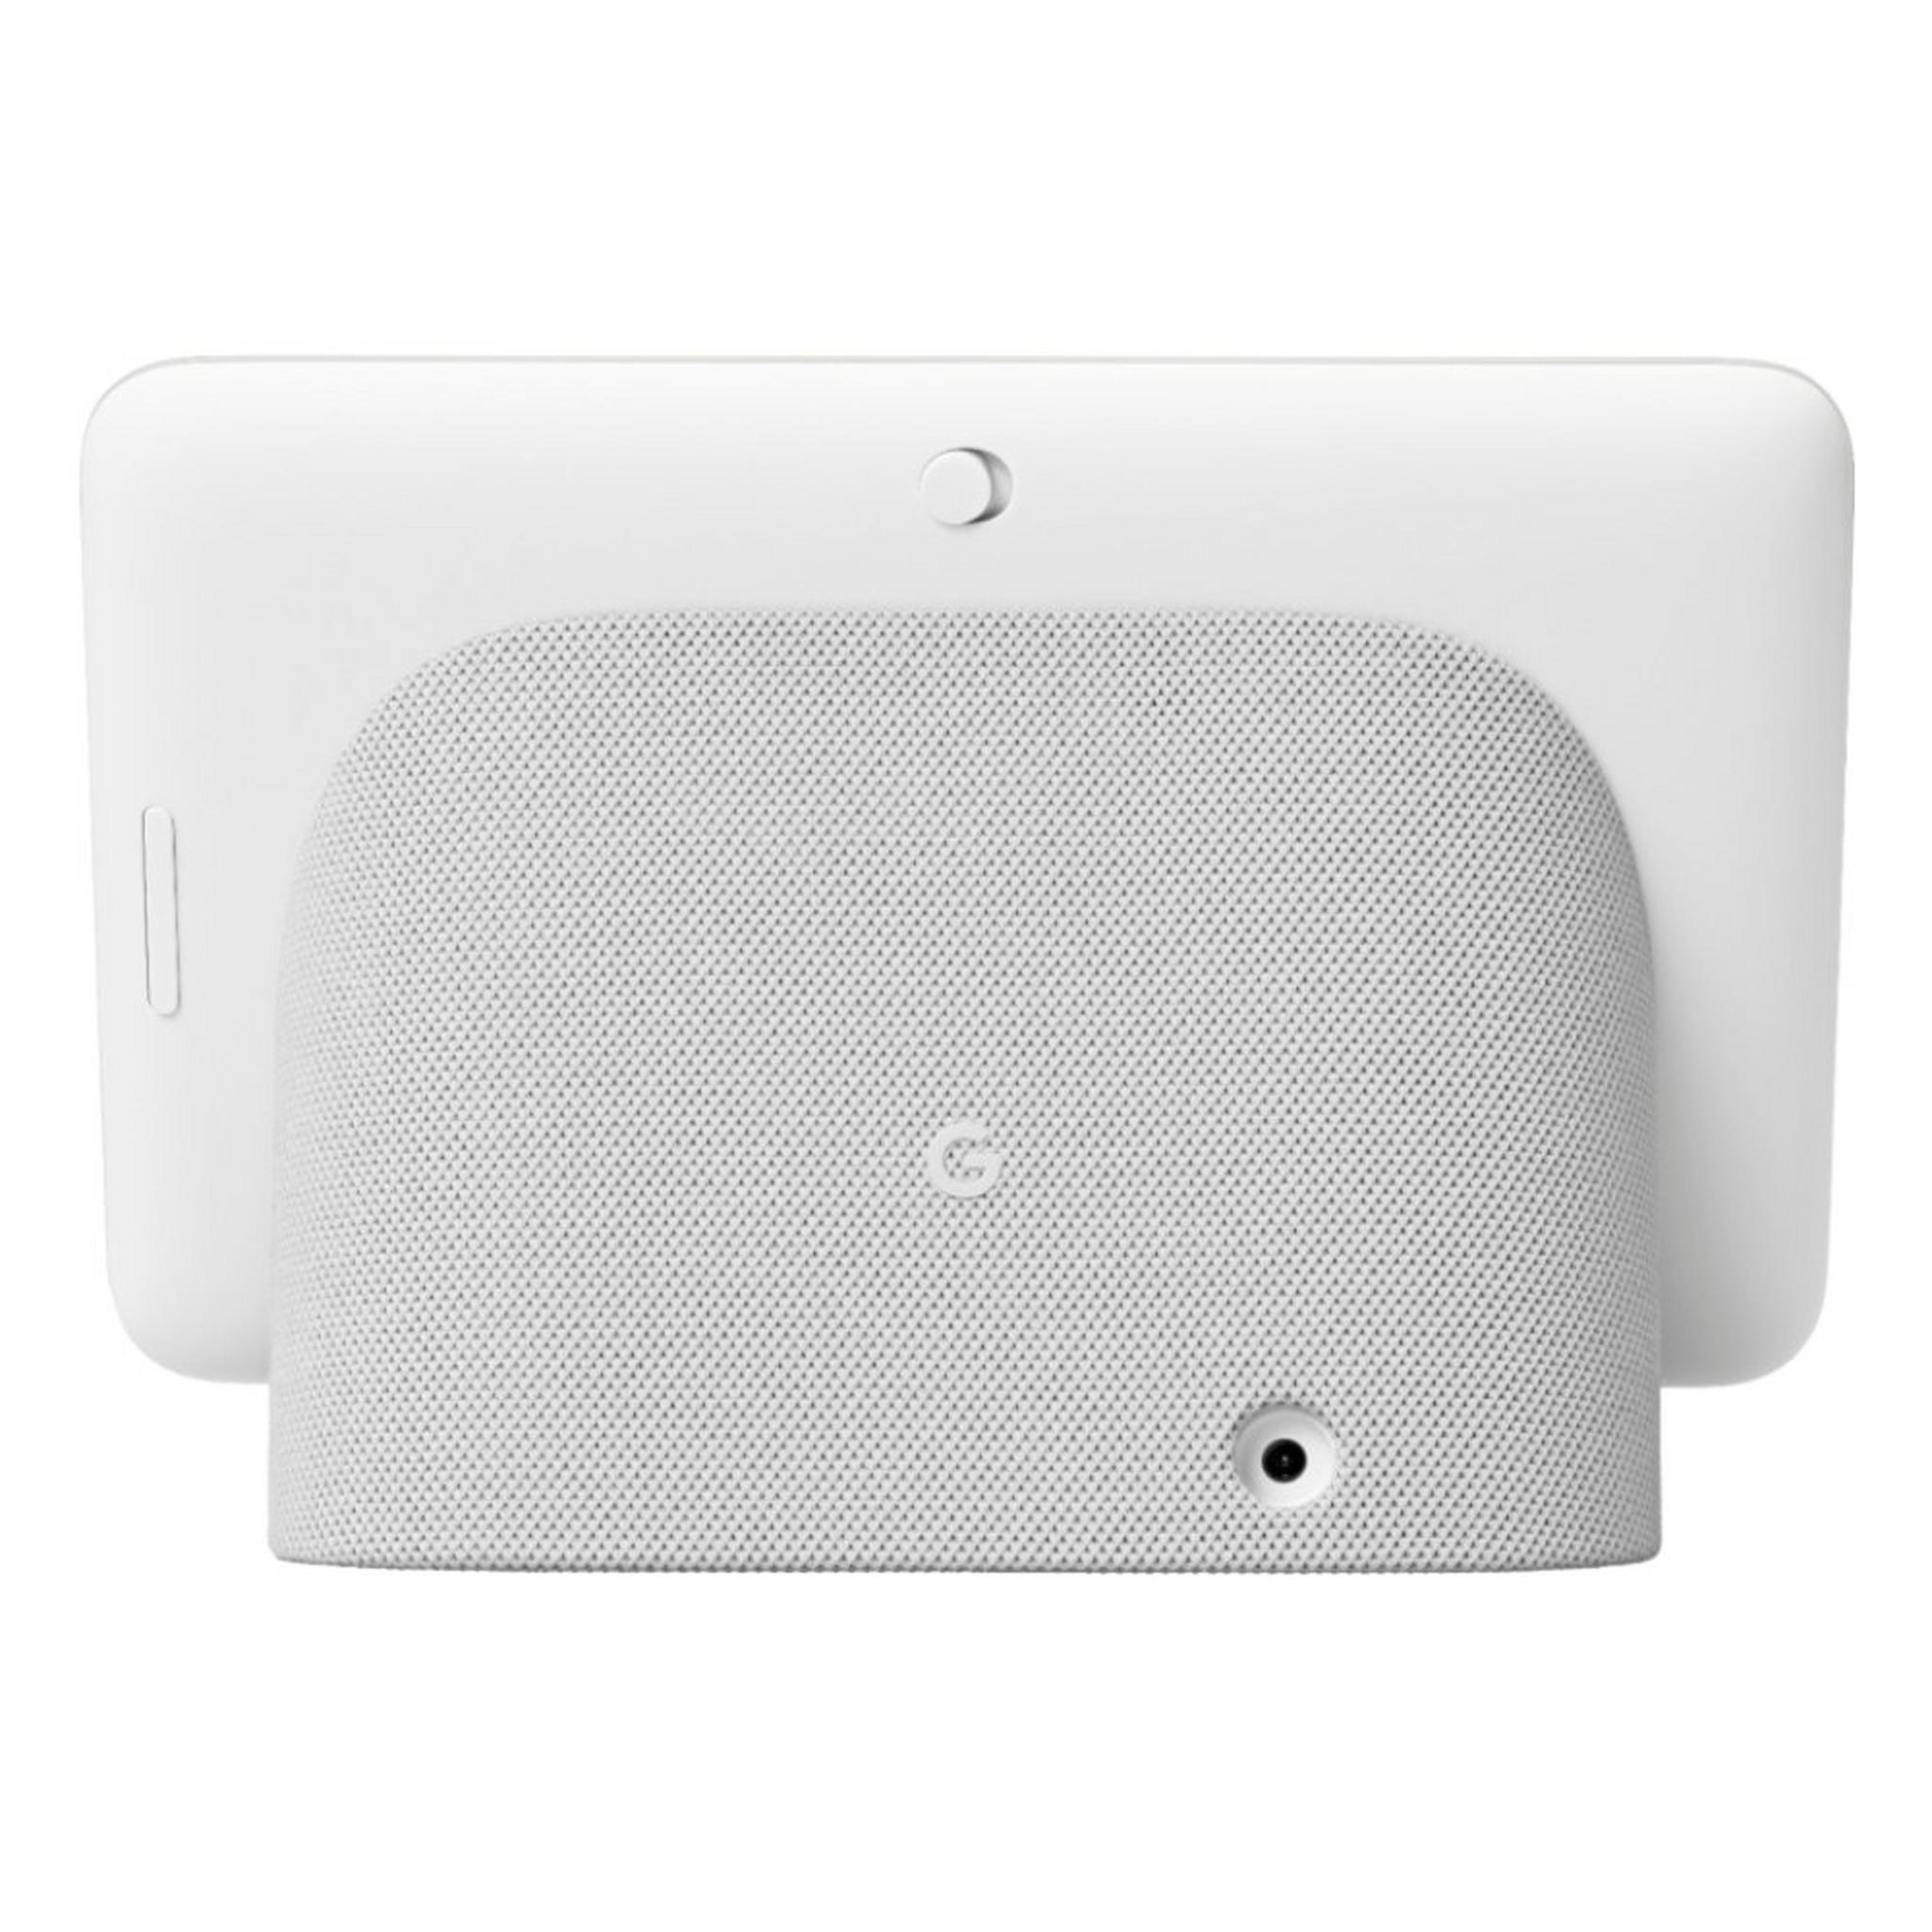 شاشة جوجل نست هاب الجيل الثاني الذكيّة بحجم 7 بوصة - أبيض